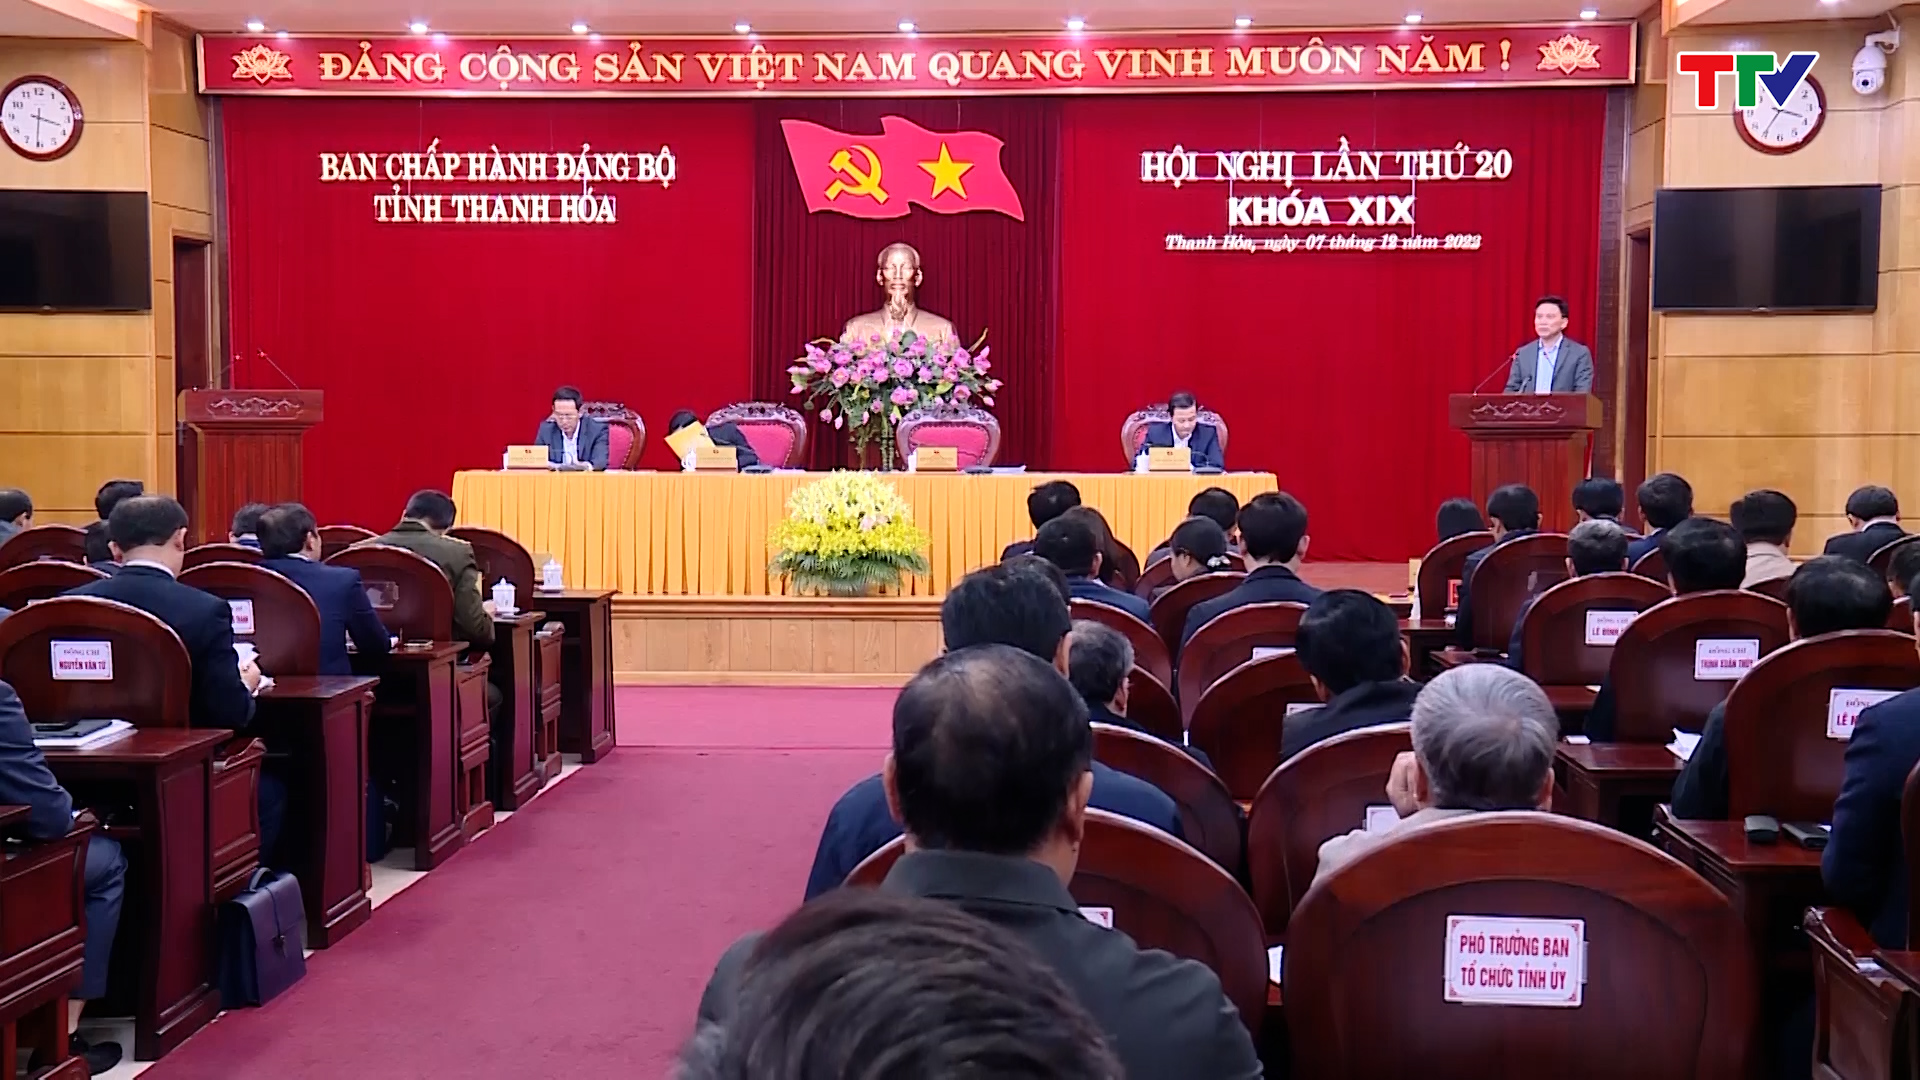 Hội nghị lần thứ 20 Ban Chấp hành Đảng bộ tỉnh Thanh Hóa khóa XIX - Ảnh 2.